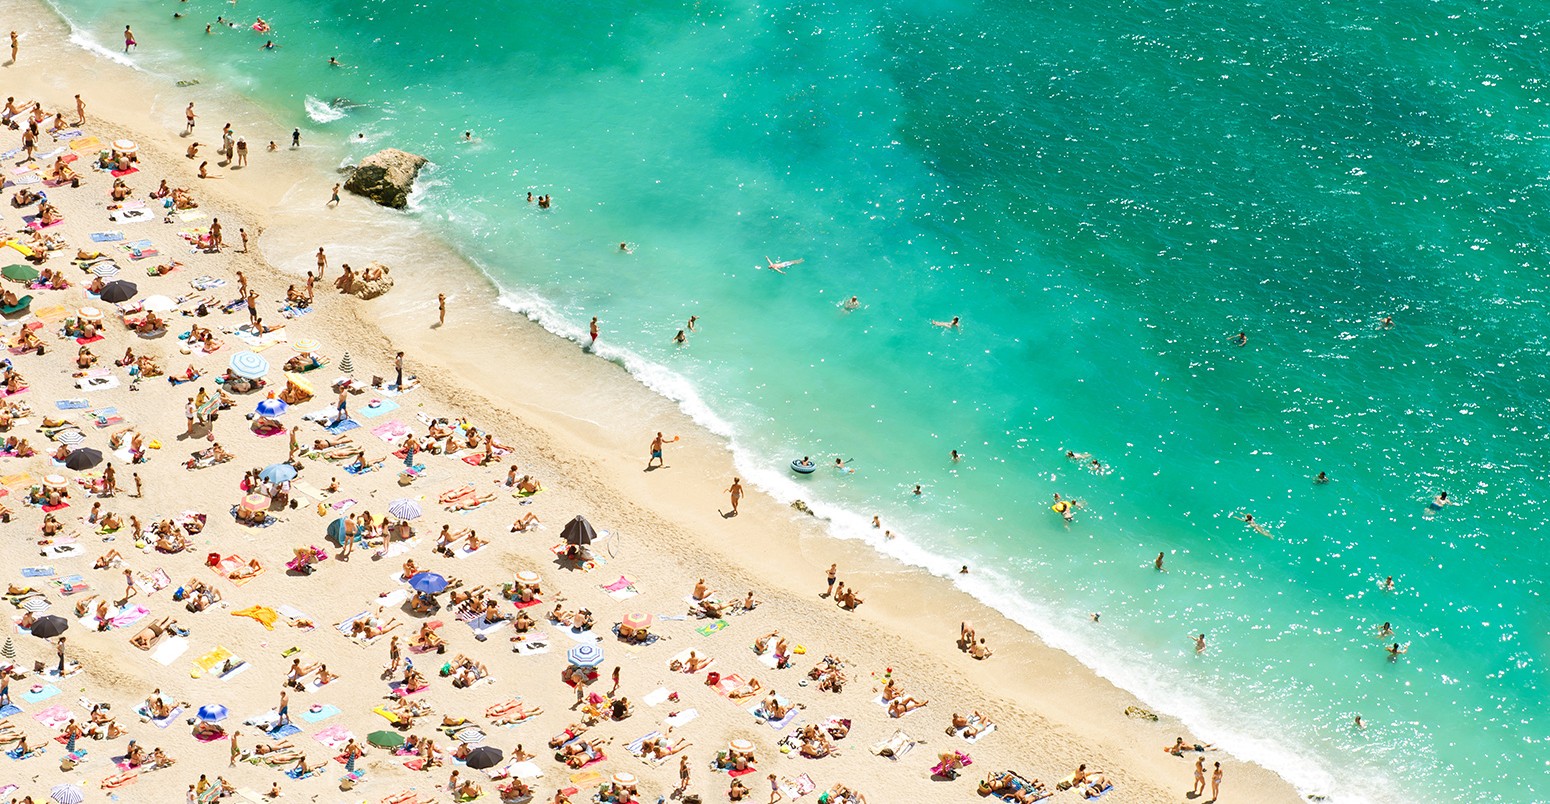 与游客,蔚蓝海岸的海滩日光浴浴床d umbrellas on the hot summer day